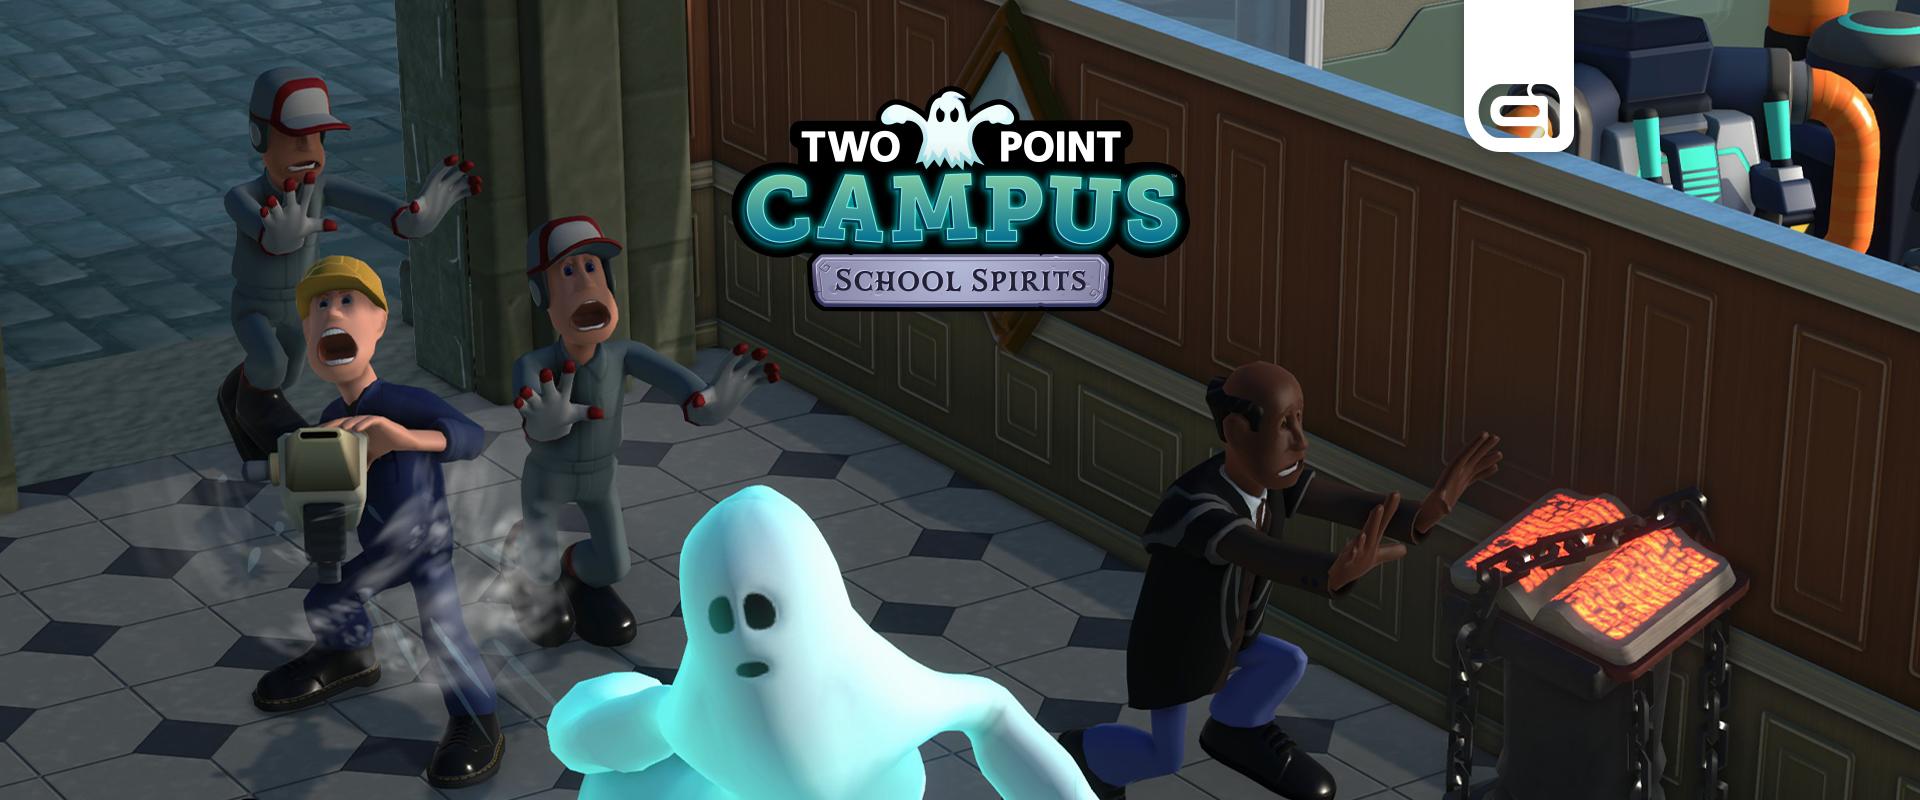 Szellemes szellemeskedés - Two Point Campus: School Spirits DLC kritika